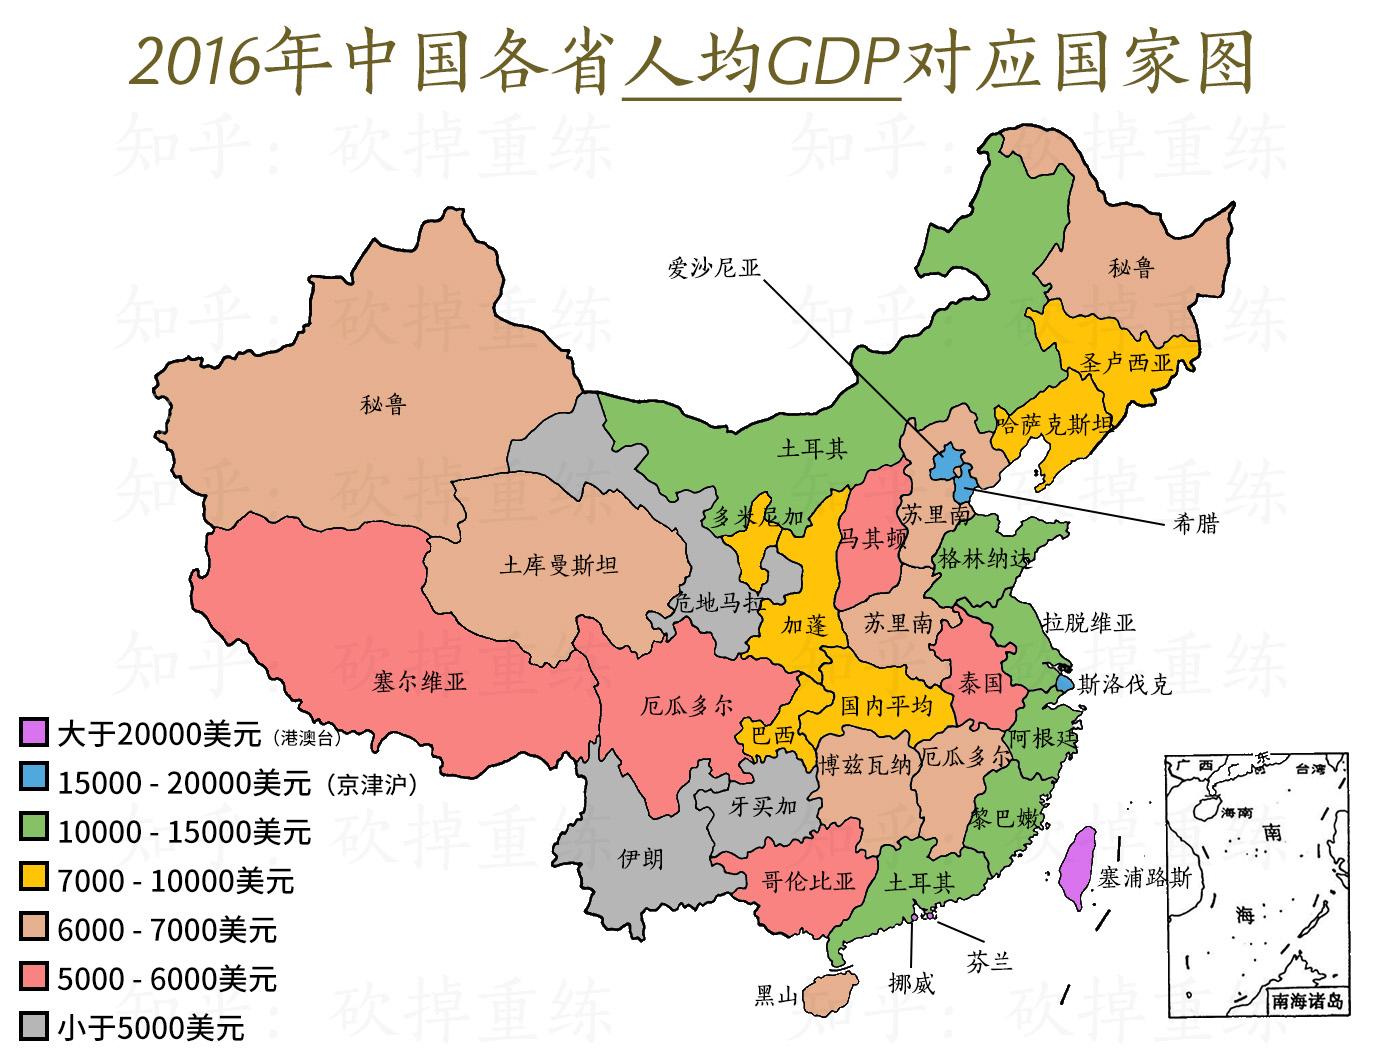 2016年中国各省gdp和世界各国的比较图